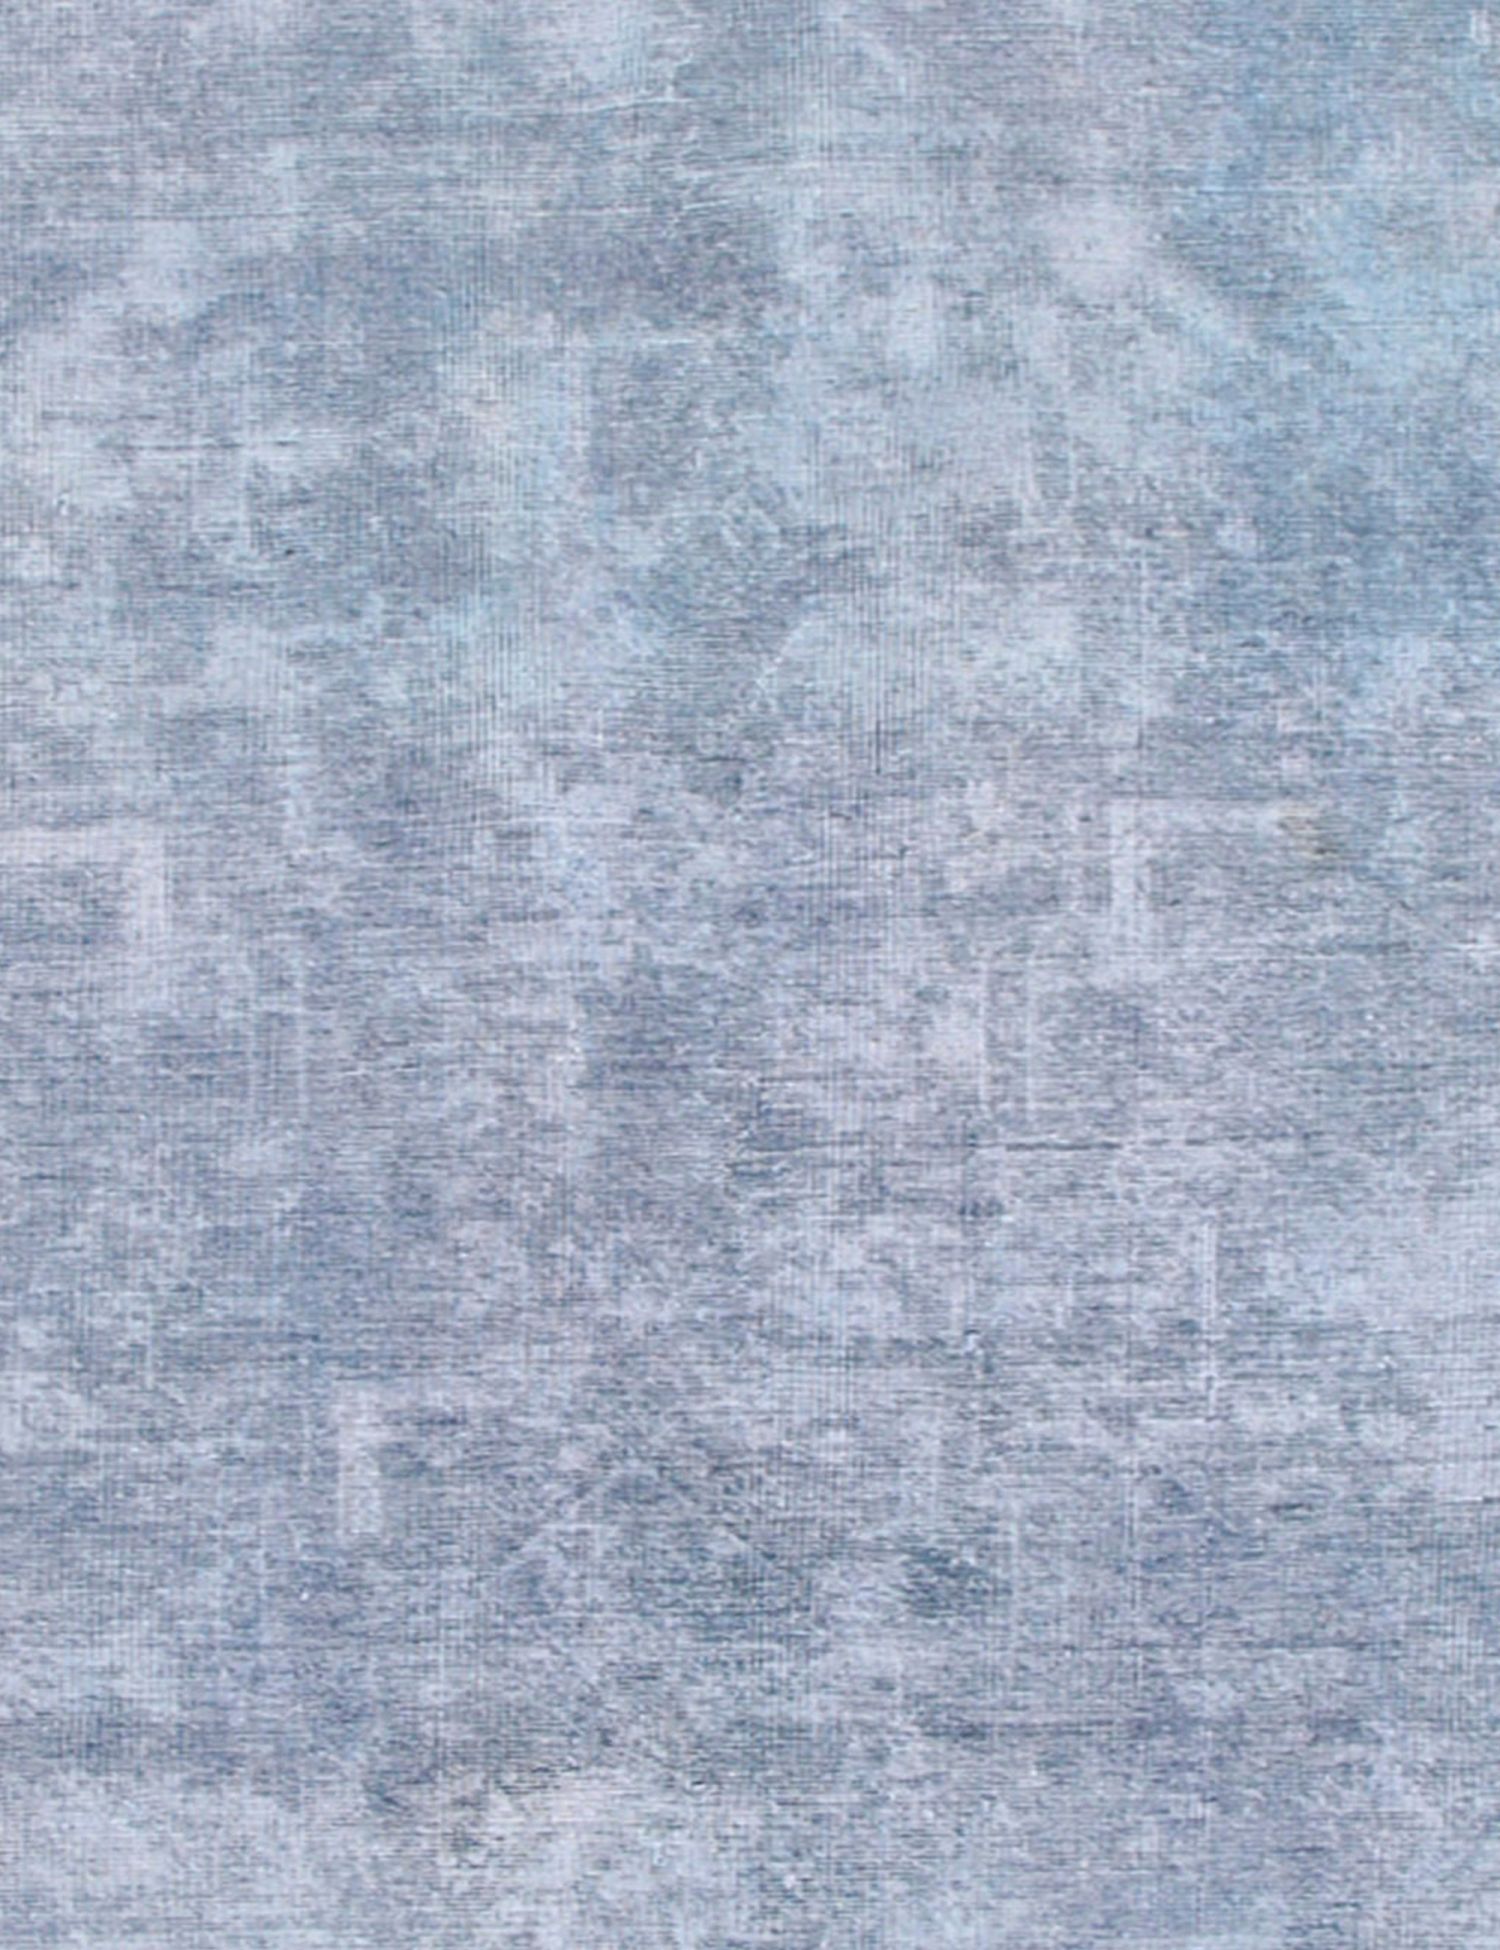 Rund  vintage teppich  blau <br/>194 x 194 cm